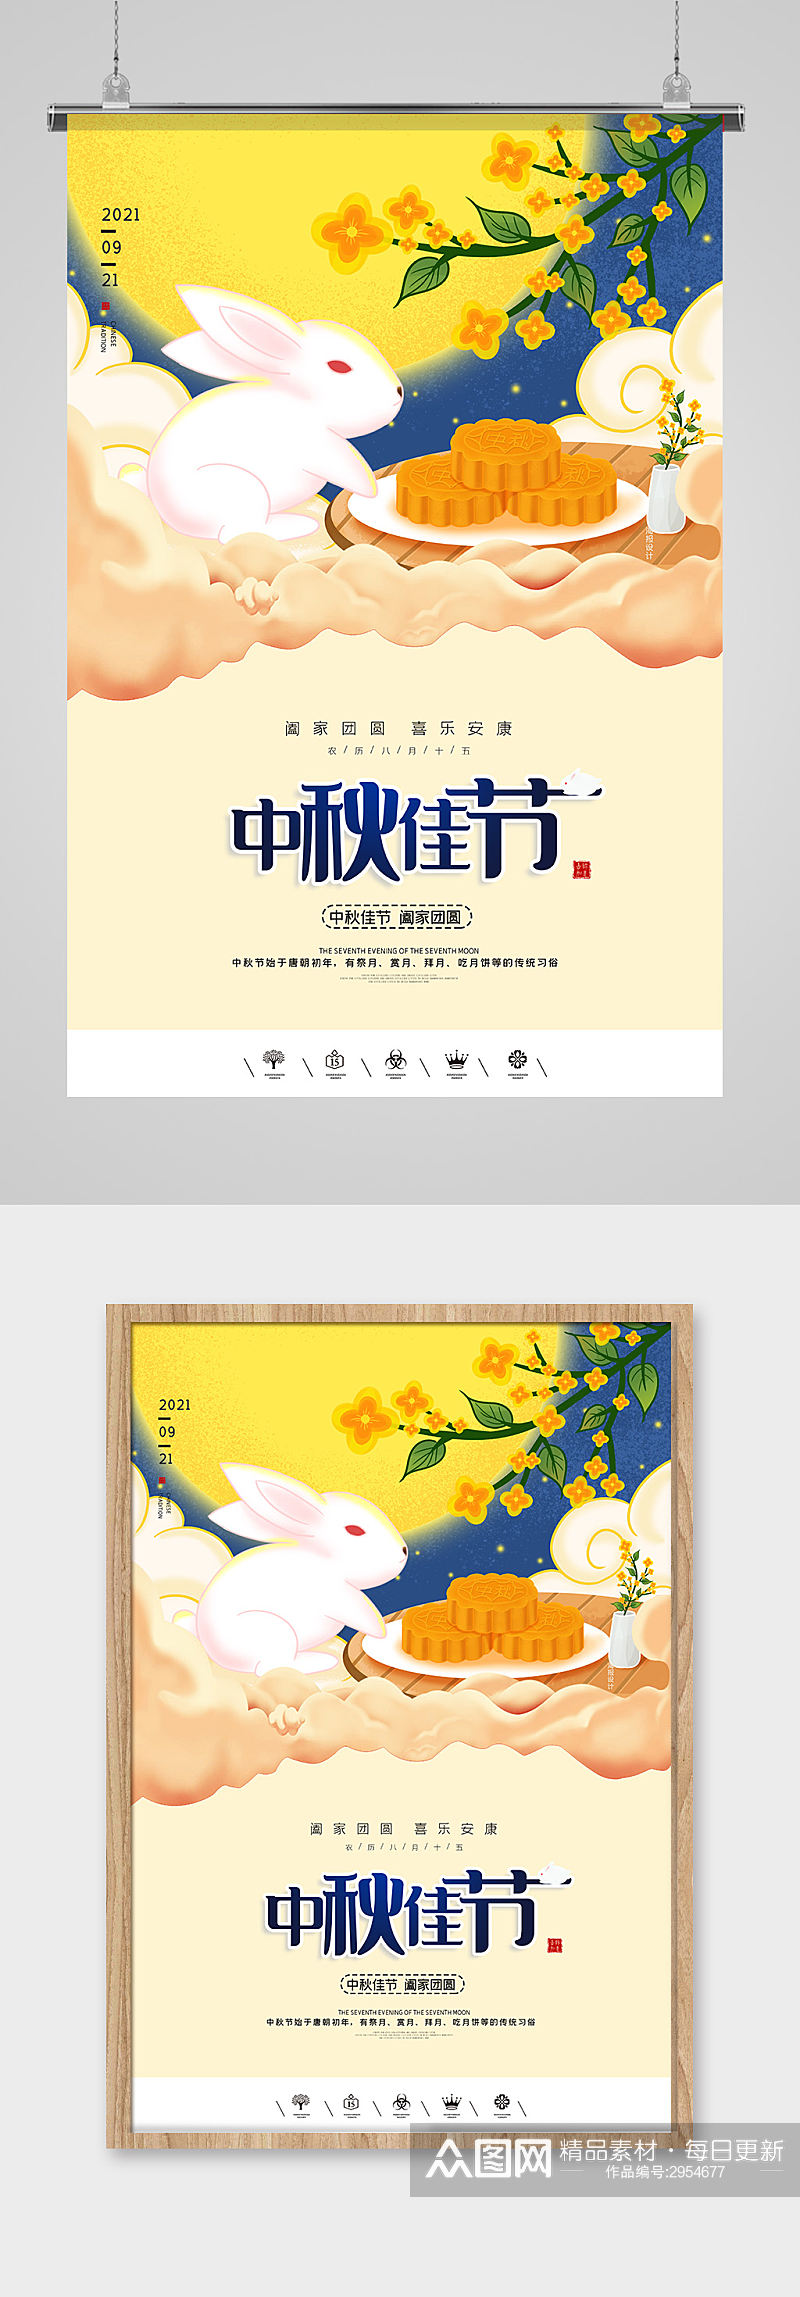 中秋佳节促销海报设计素材